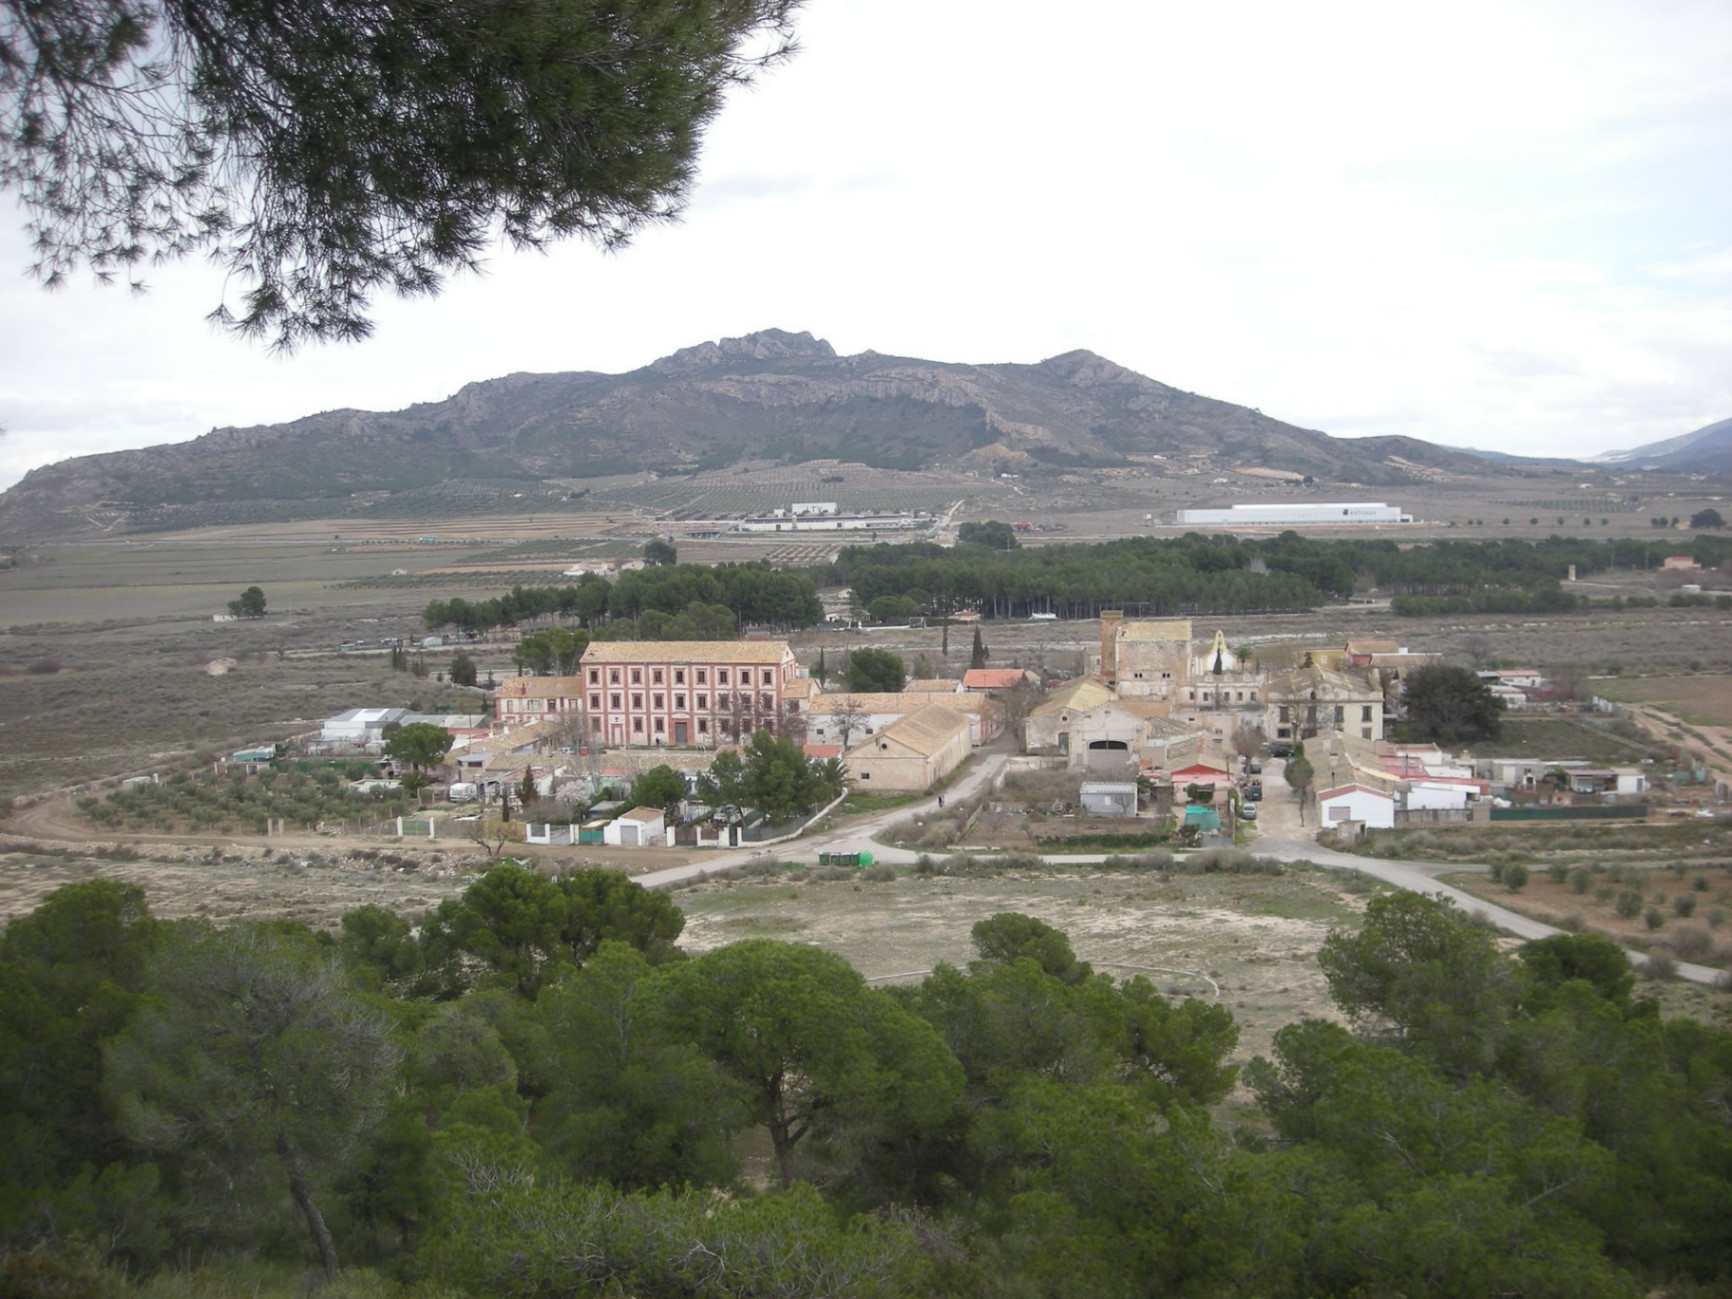 Image of La Colonia de Santa Eulalia